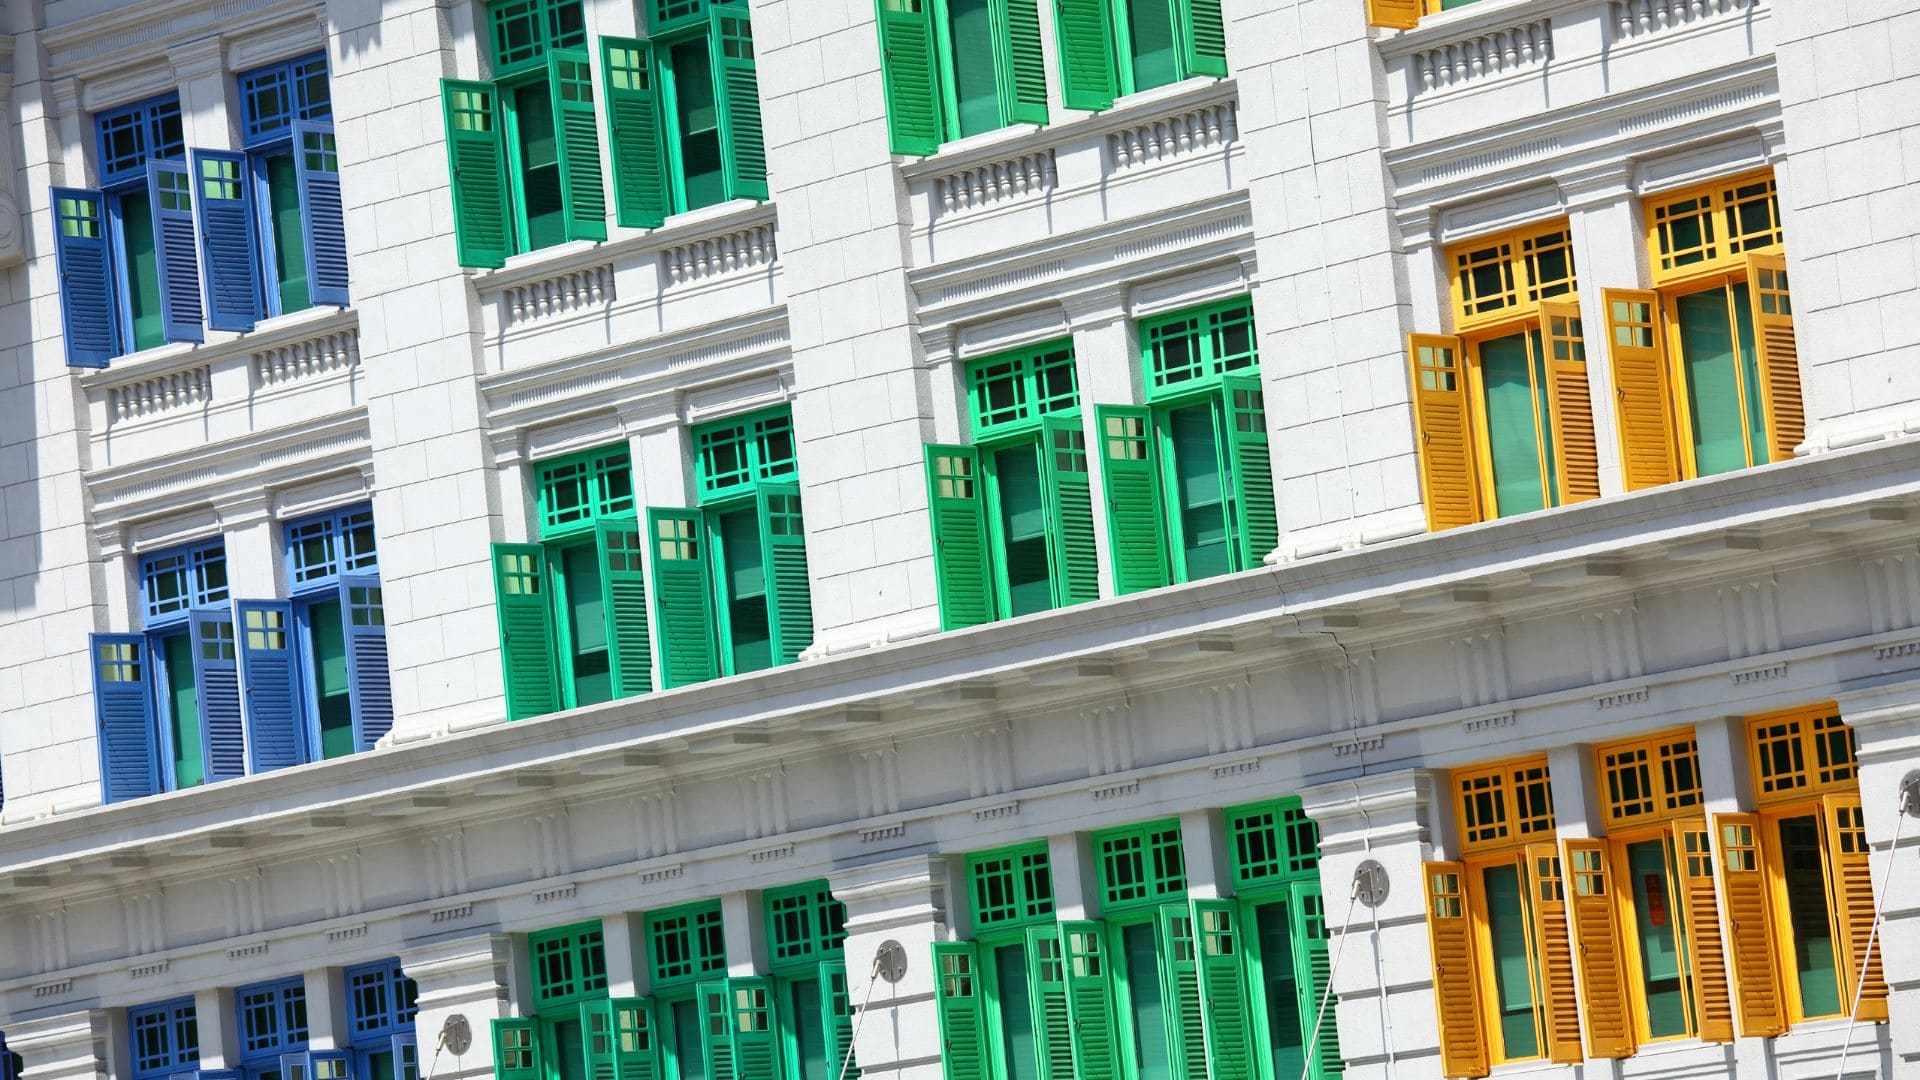 Volets en bois peints en bleu, vert et jaune sur la façade d'un bâtiment